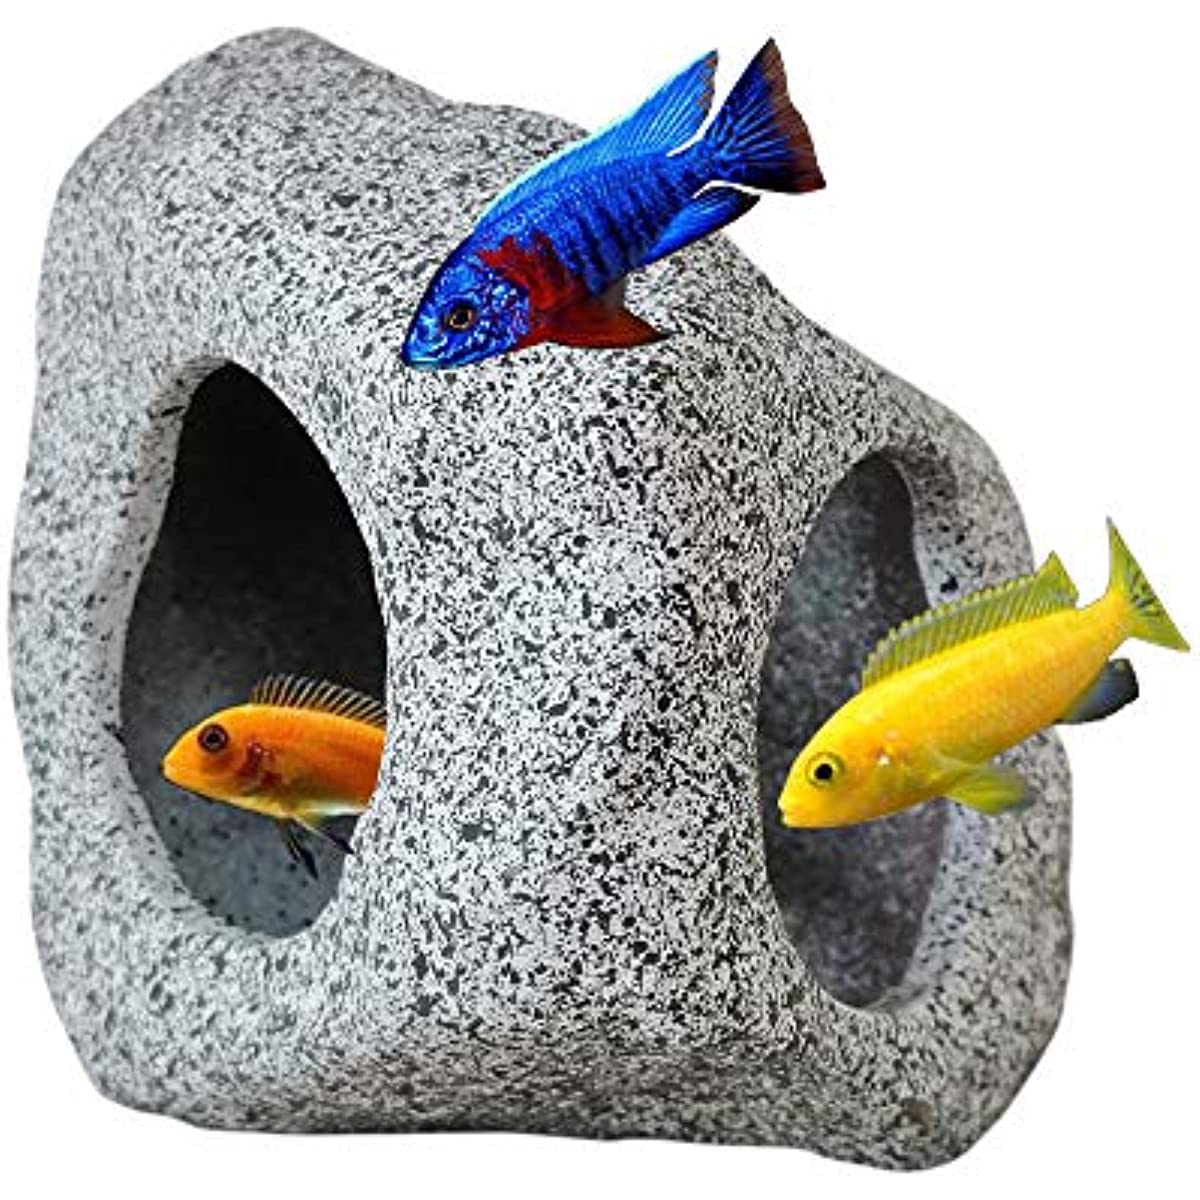 

Aquarium Hideaway Rock Cave For Aquatic Pets To Breed, Play And Rest Fish Tank Ornaments, Decor Stone